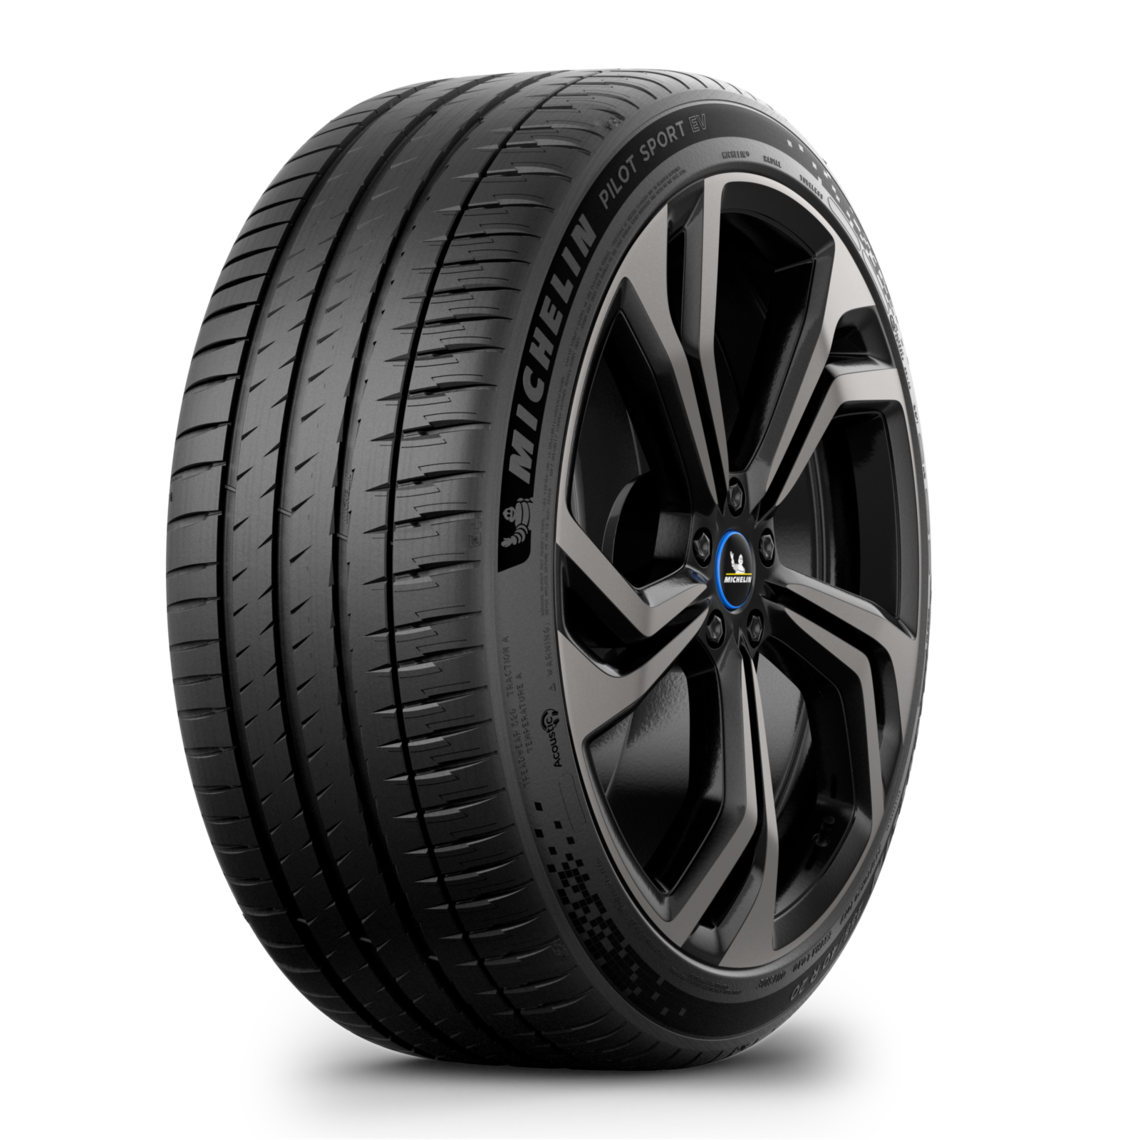 Gomme Nuove Michelin 255/40 R20 101W P. SPORT EV T0 XL pneumatici nuovi Estivo